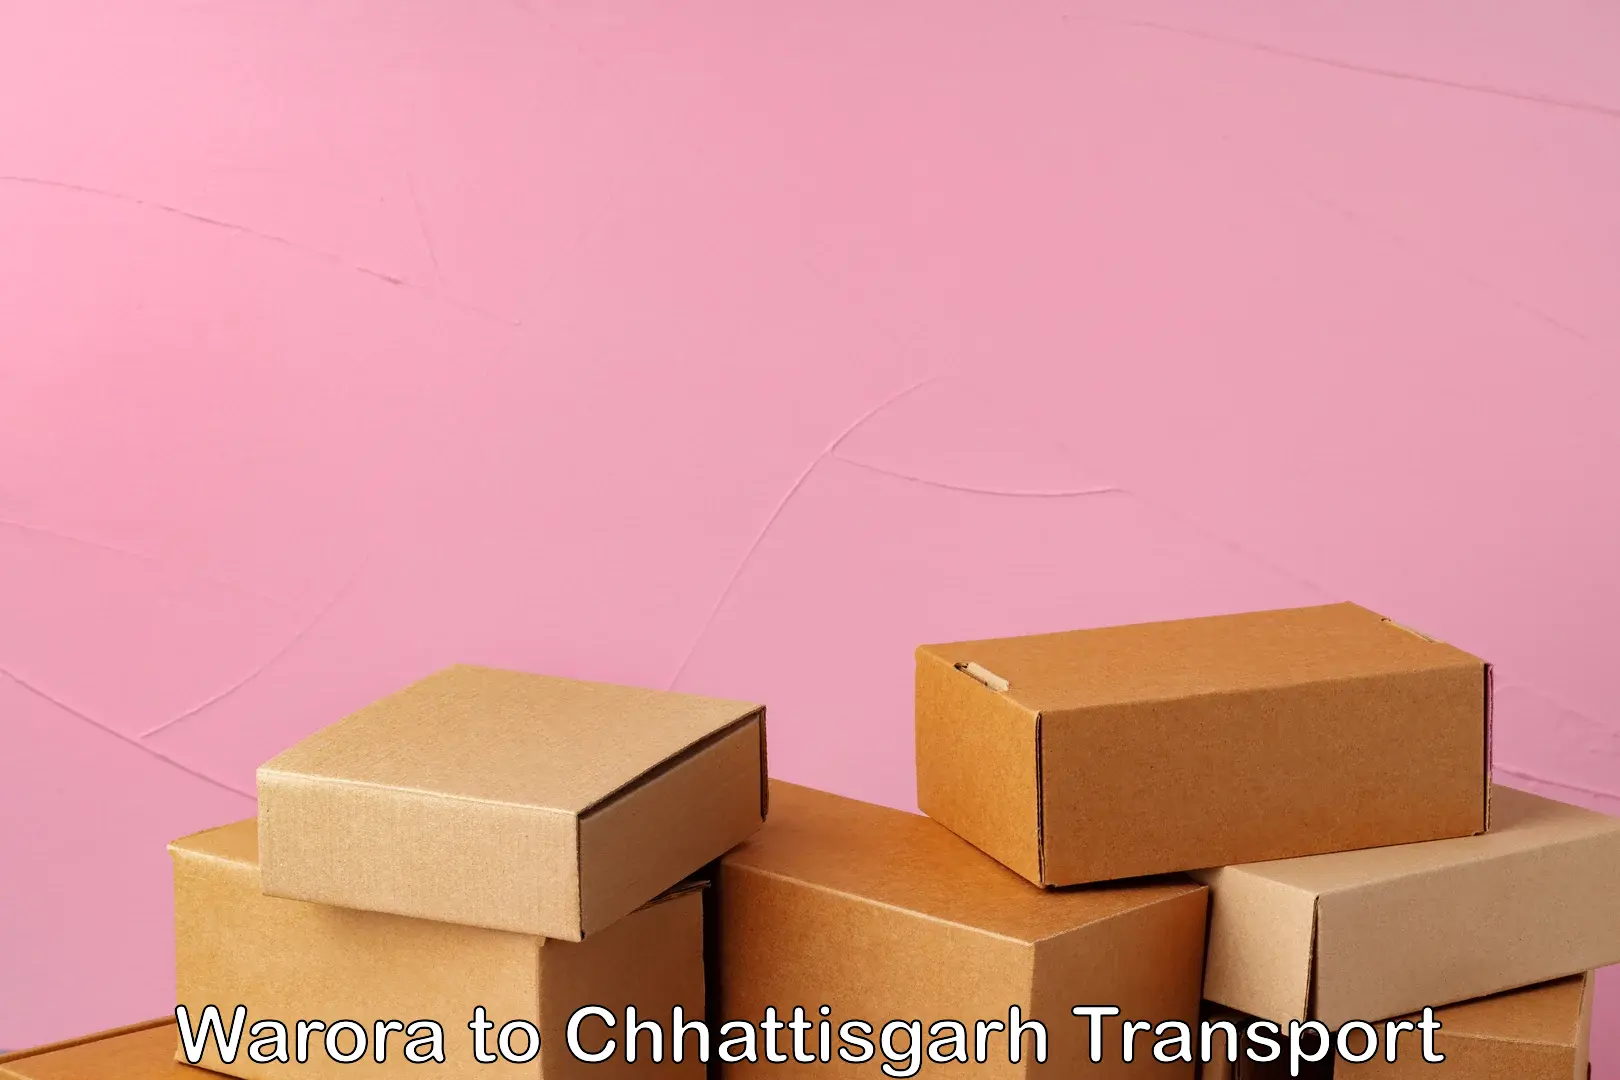 Transportation services Warora to Bijapur Chhattisgarh